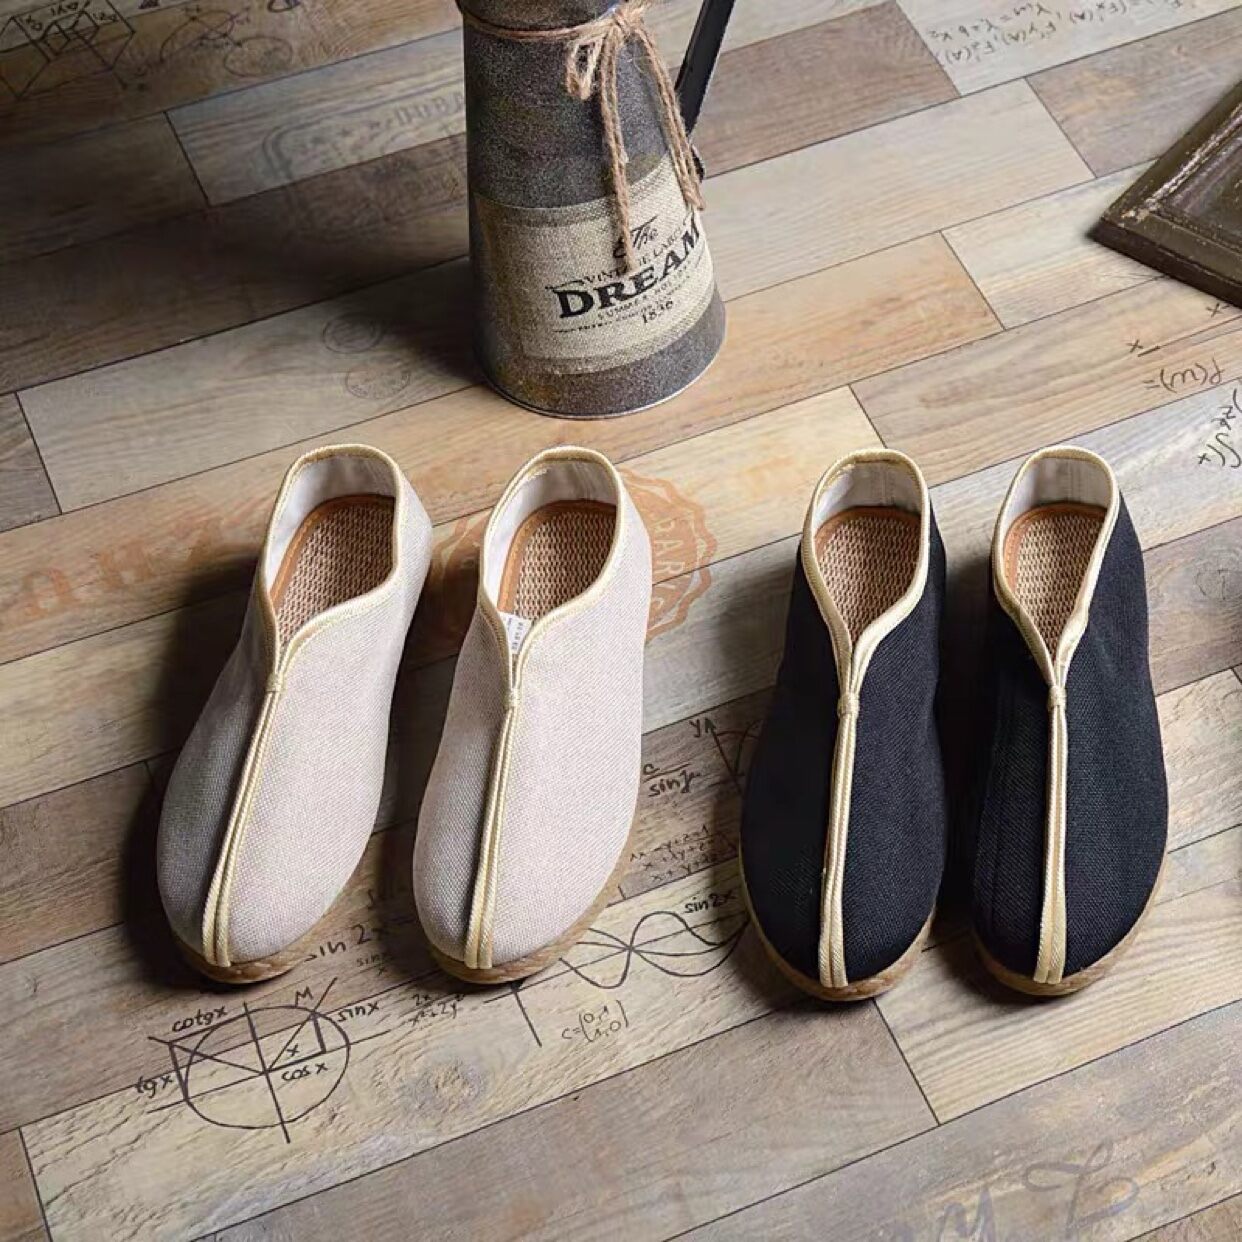 Phong cách Nam vintage nổi bật với những đôi giày mang hơi hướng Trung Quốc cổ điển. Được lấy cảm hứng từ những năm 70, hãy cùng chiêm ngưỡng những đôi giày độc đáo và sang trọng này.